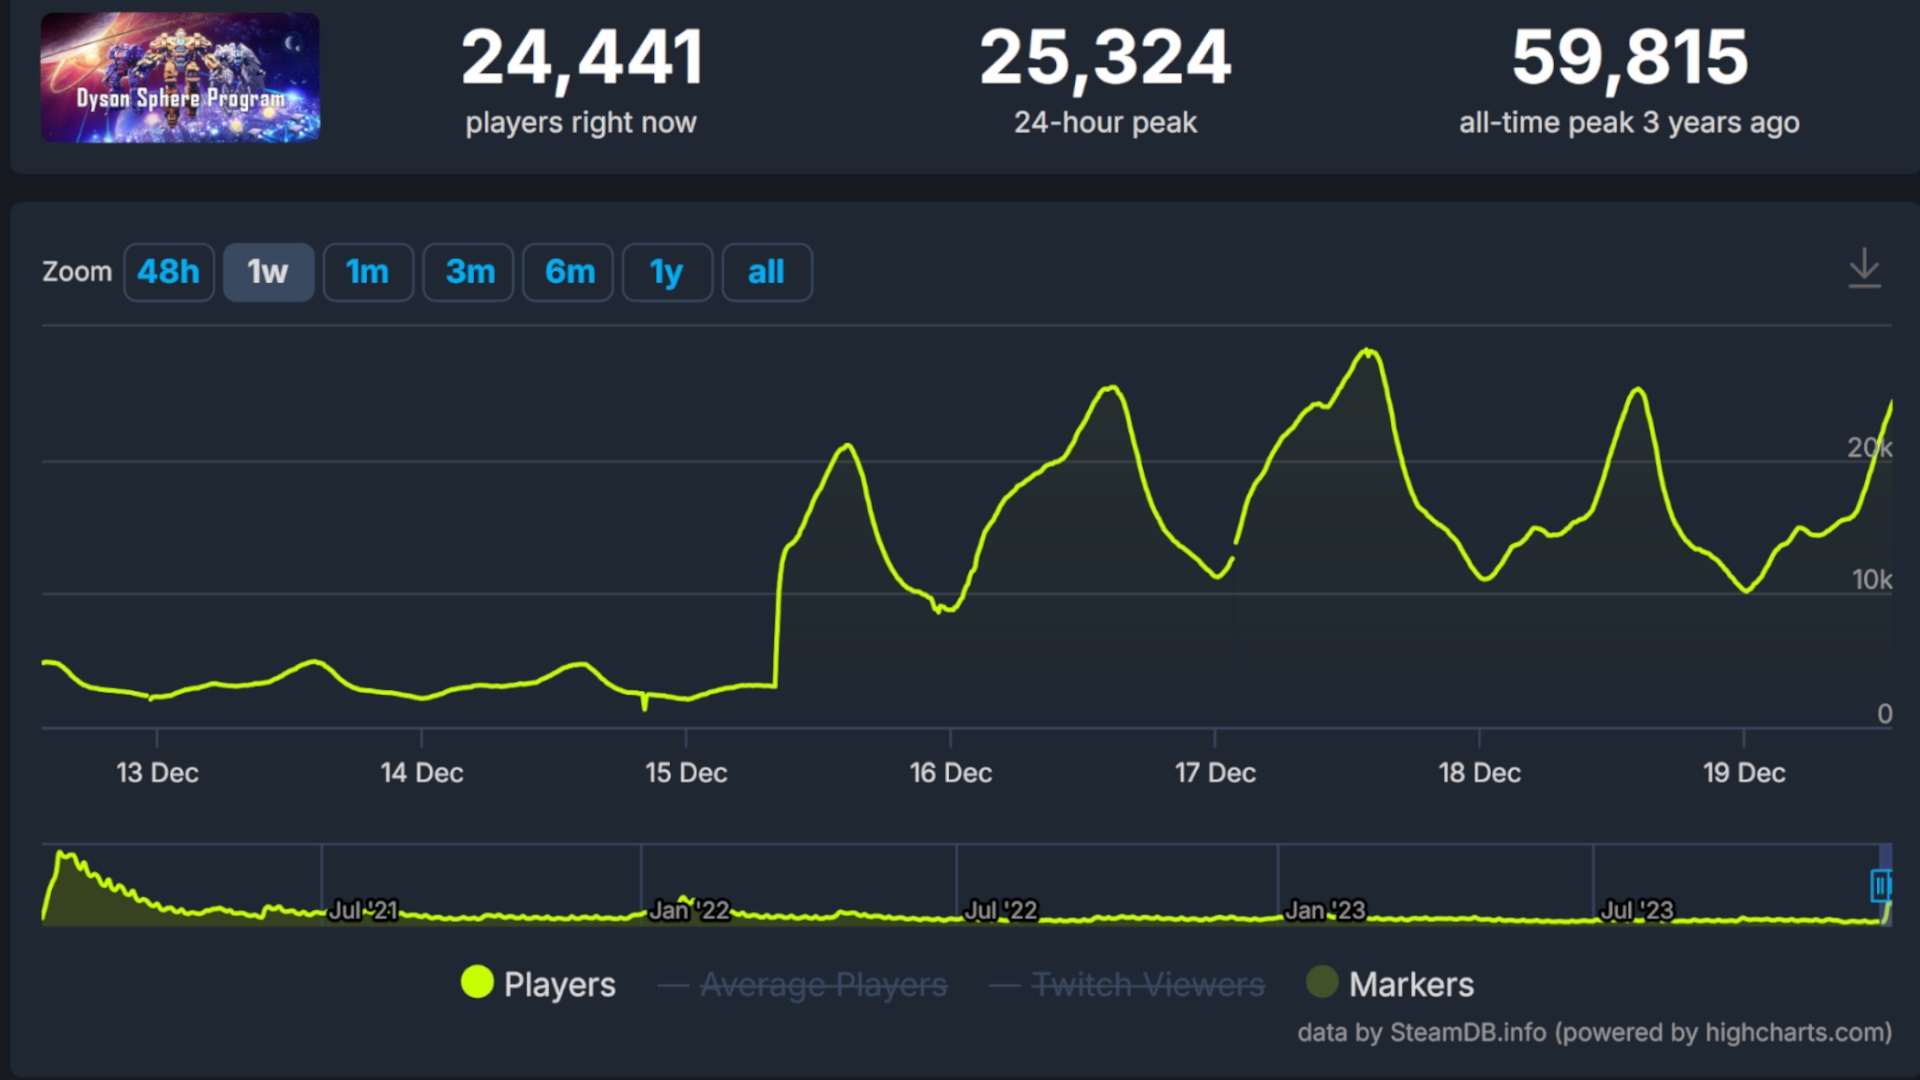 (Le patch est en ligne et les joueurs en sont reconnaissants. Depuis le 15 décembre, Dyson Sphere Program, connaît une nouvelle vague de popularité. Source : steamdb)